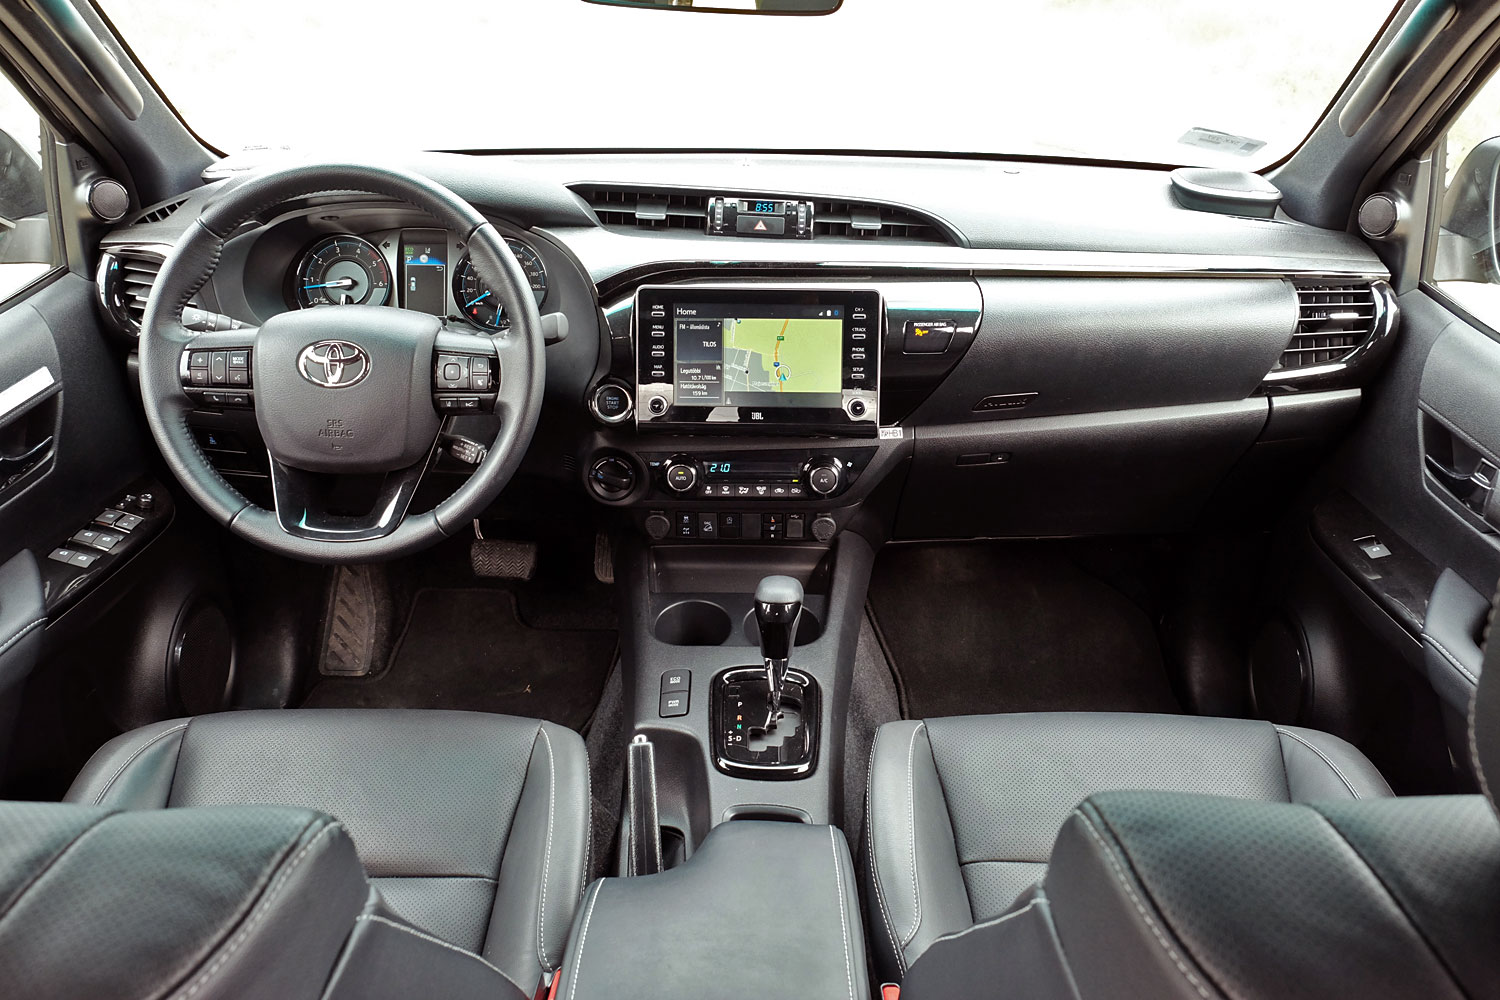 Erősebb, szebb és okosabb lett a világ kedvenc pickupja – Toyota Hilux 2.8 29